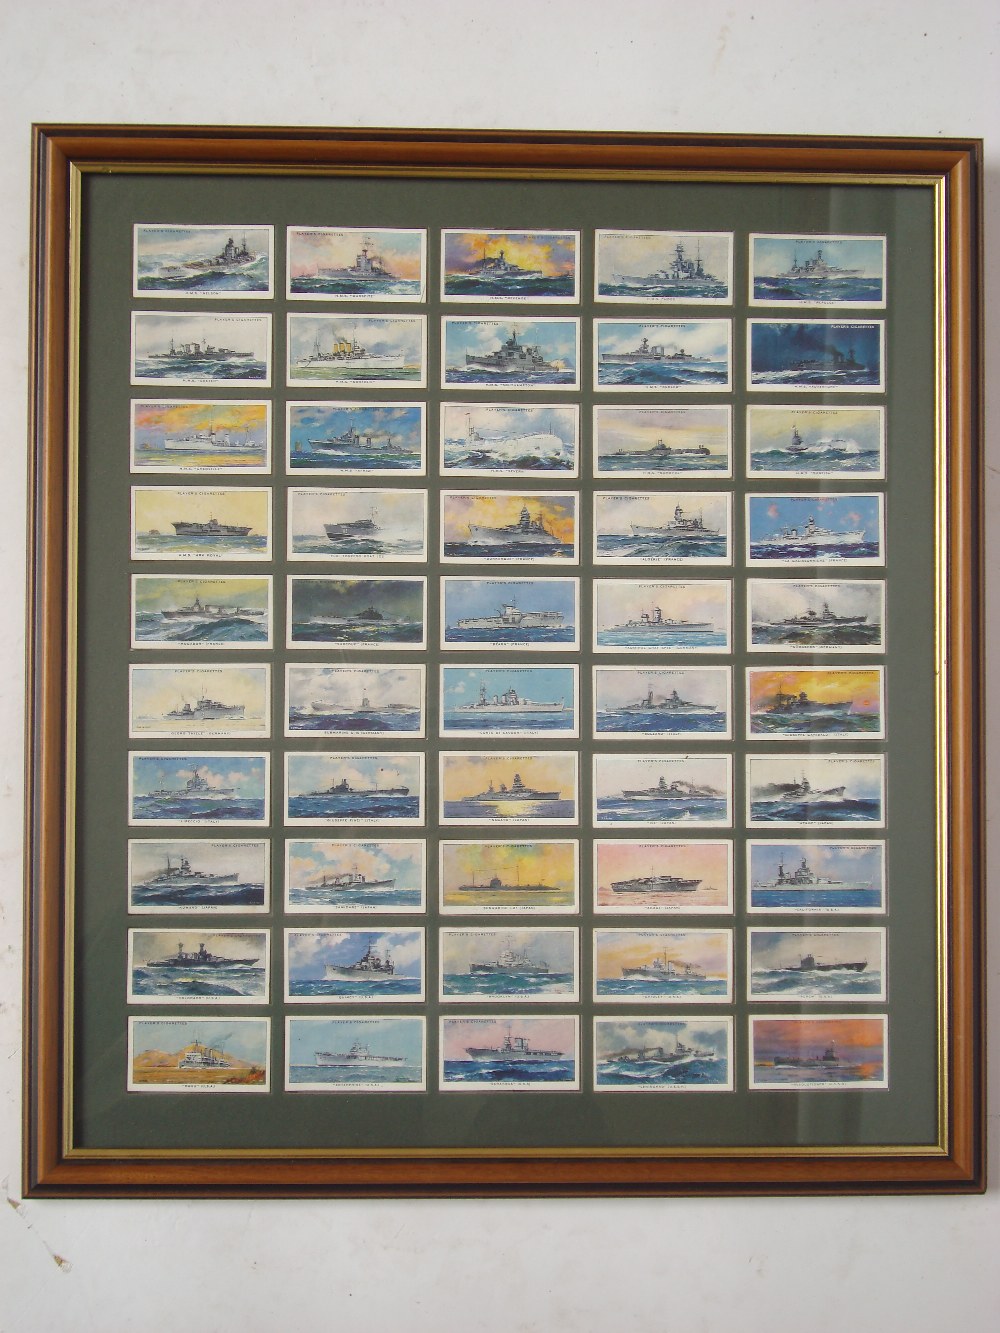 A framed set of John Player Modern Naval Craft cigarette cards.